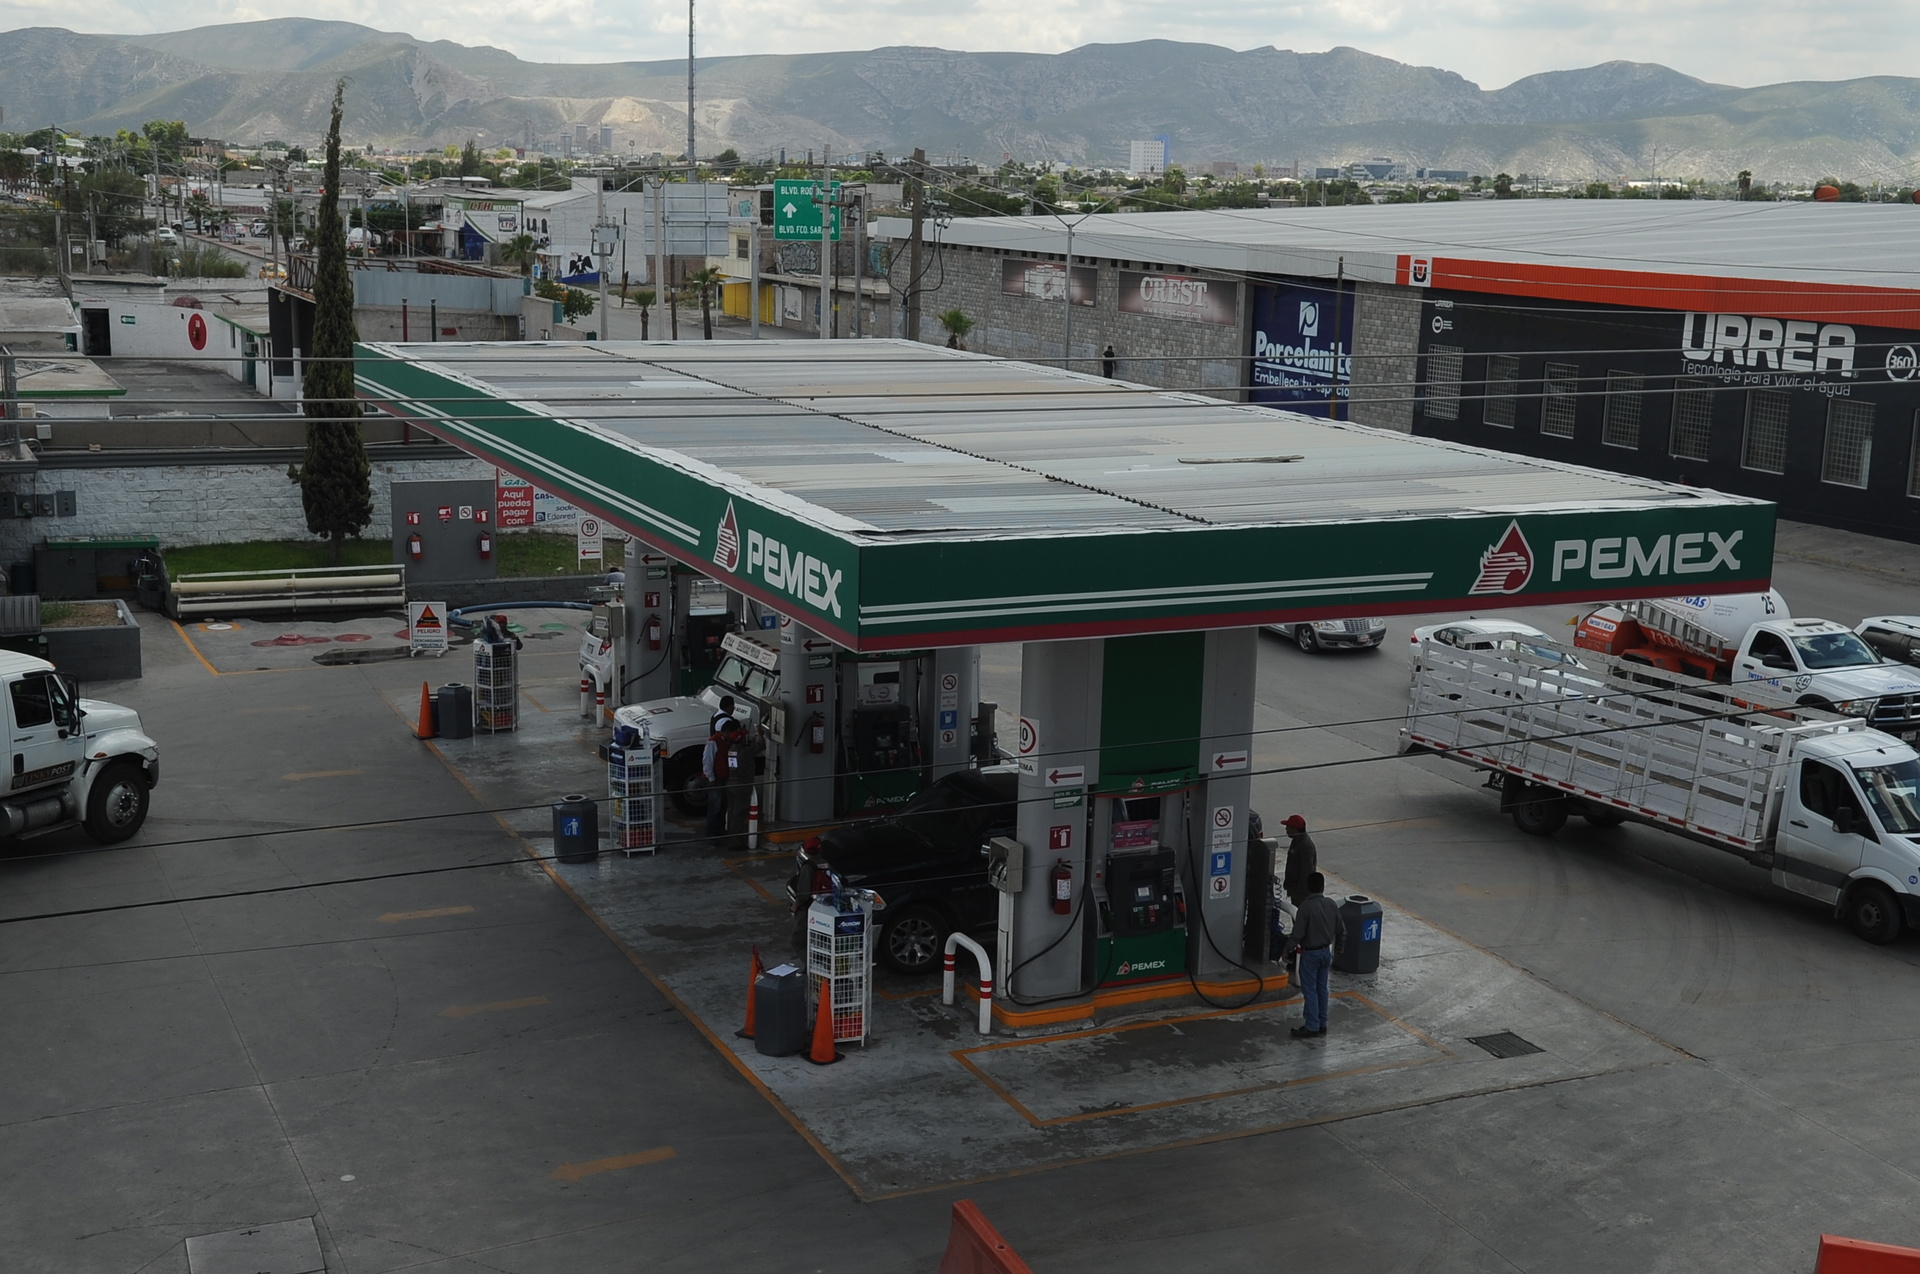 Aumentos en el precio de la gasolina golpean a la economía familiar, señala Jesús Berino Granados